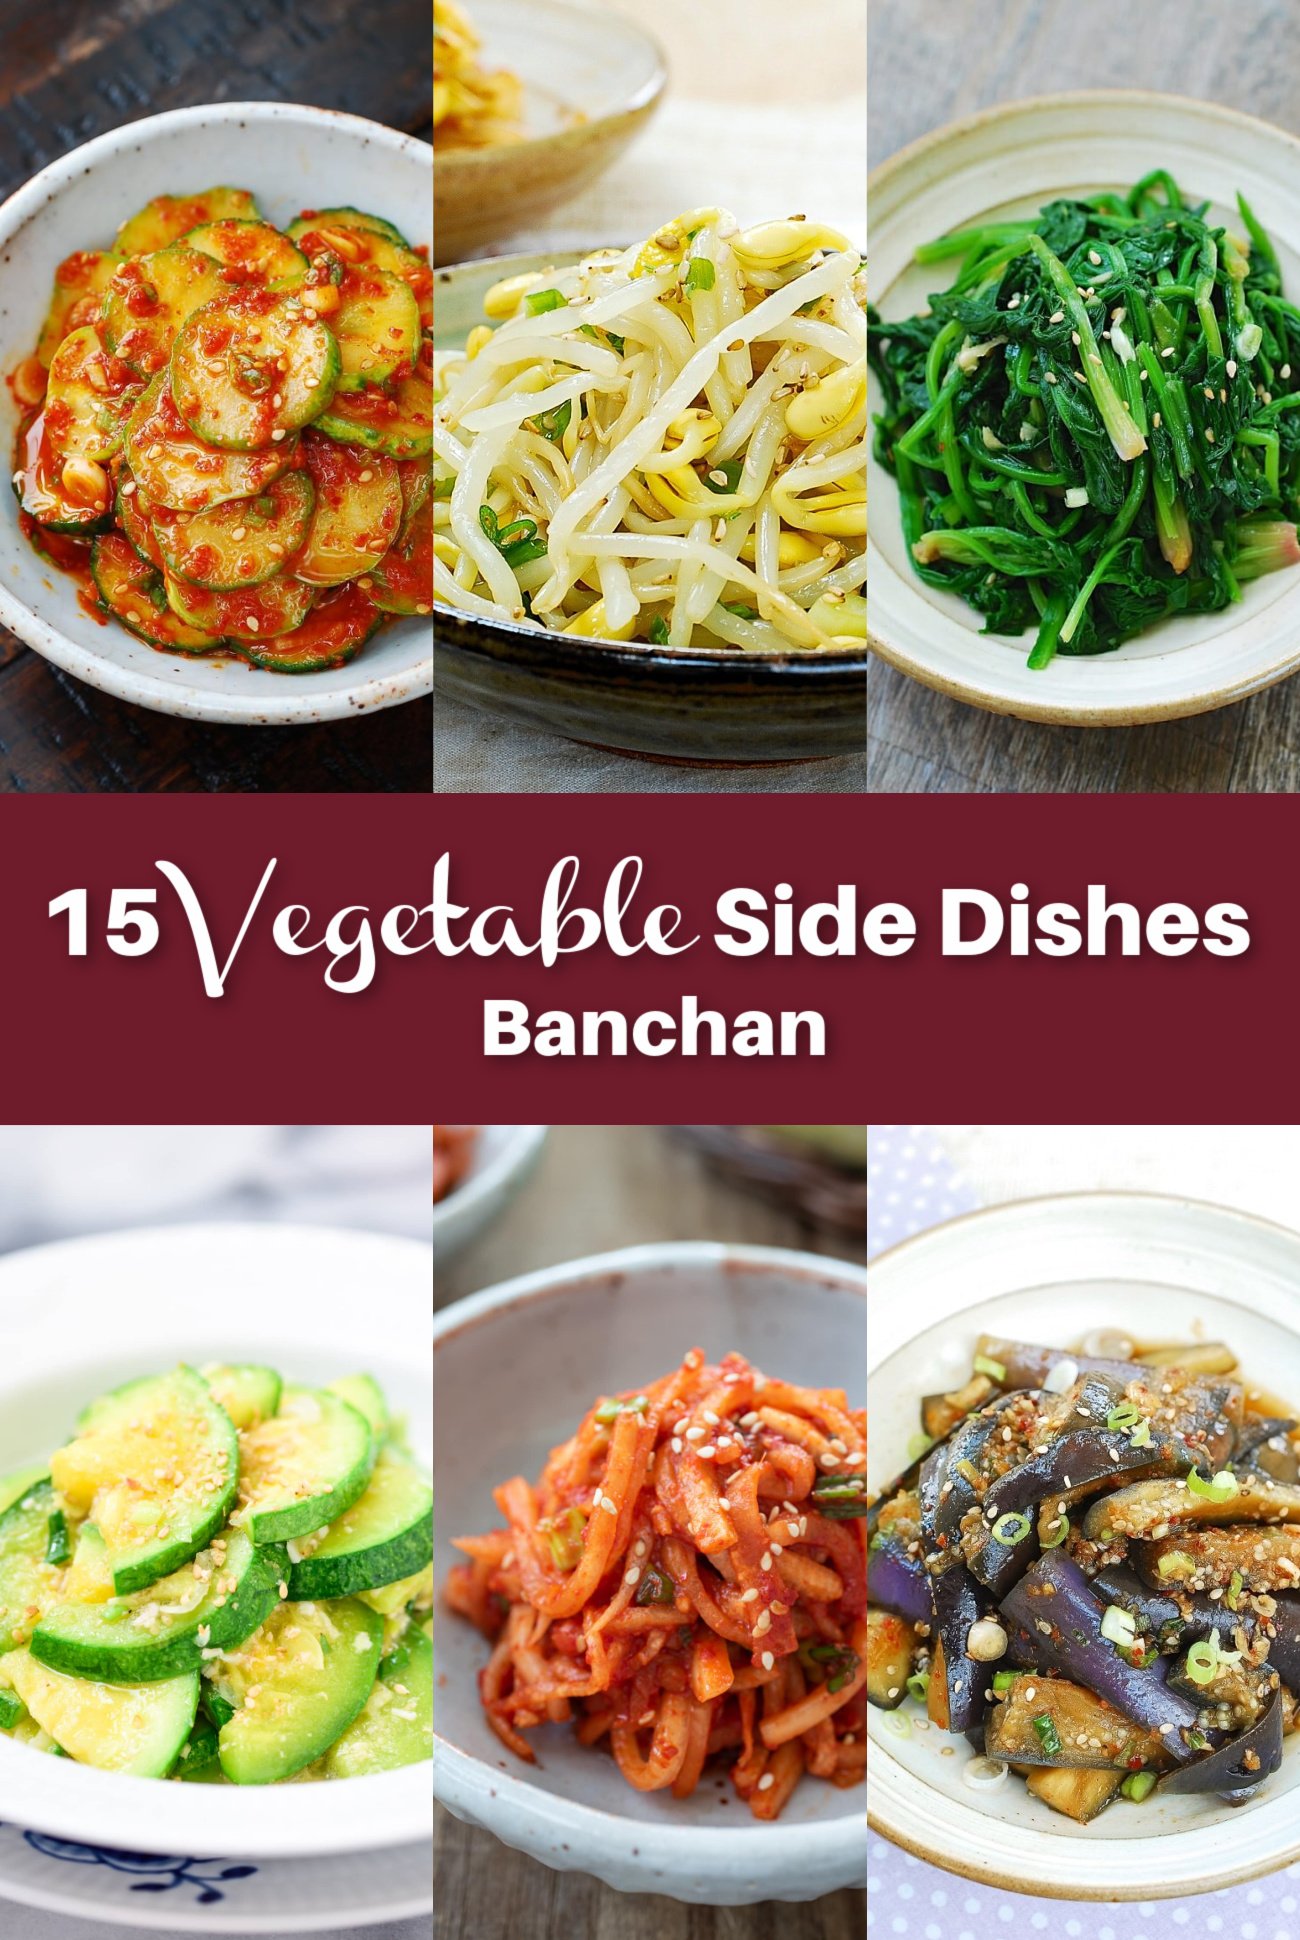 15 Vegetable Side Dishes - 15 Vegetable Side Dishes (Banchan)